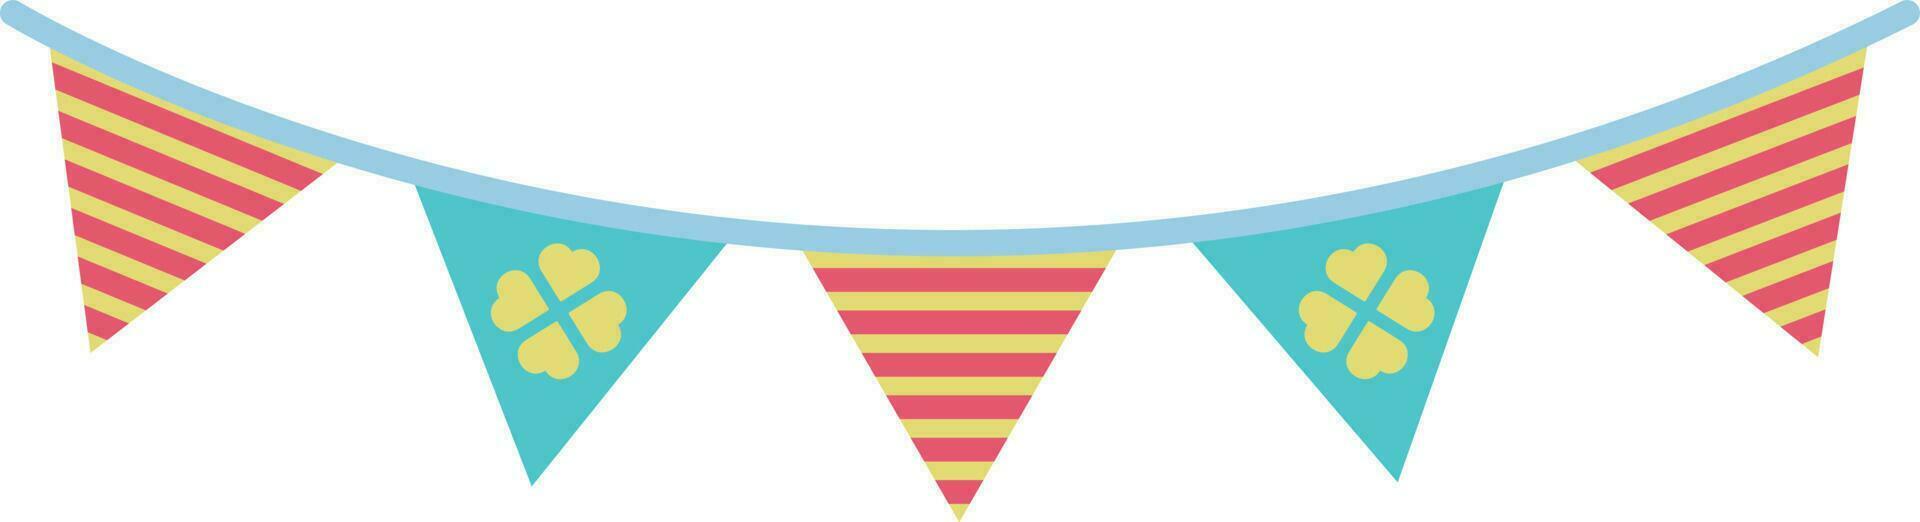 triángulo vistoso linda fiesta banderas ilustración especial estilo vector